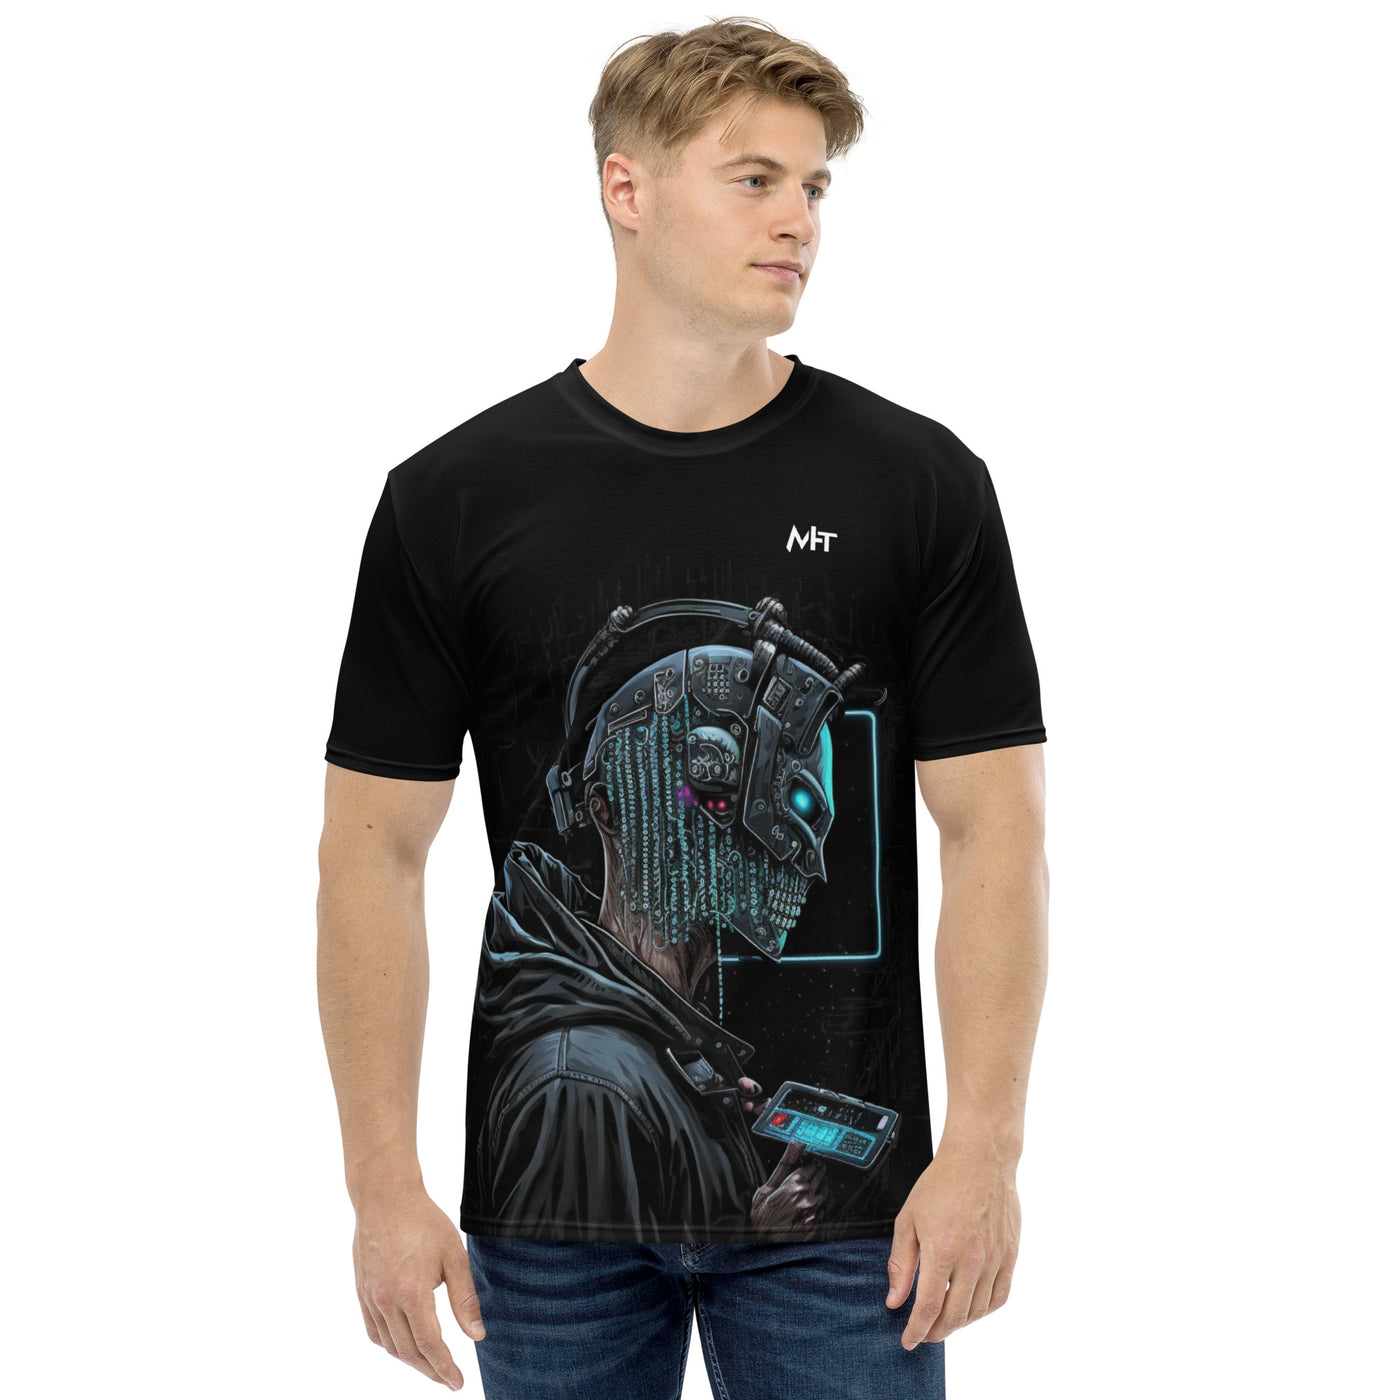 Cyberware assassin v5 - Men's t-shirt